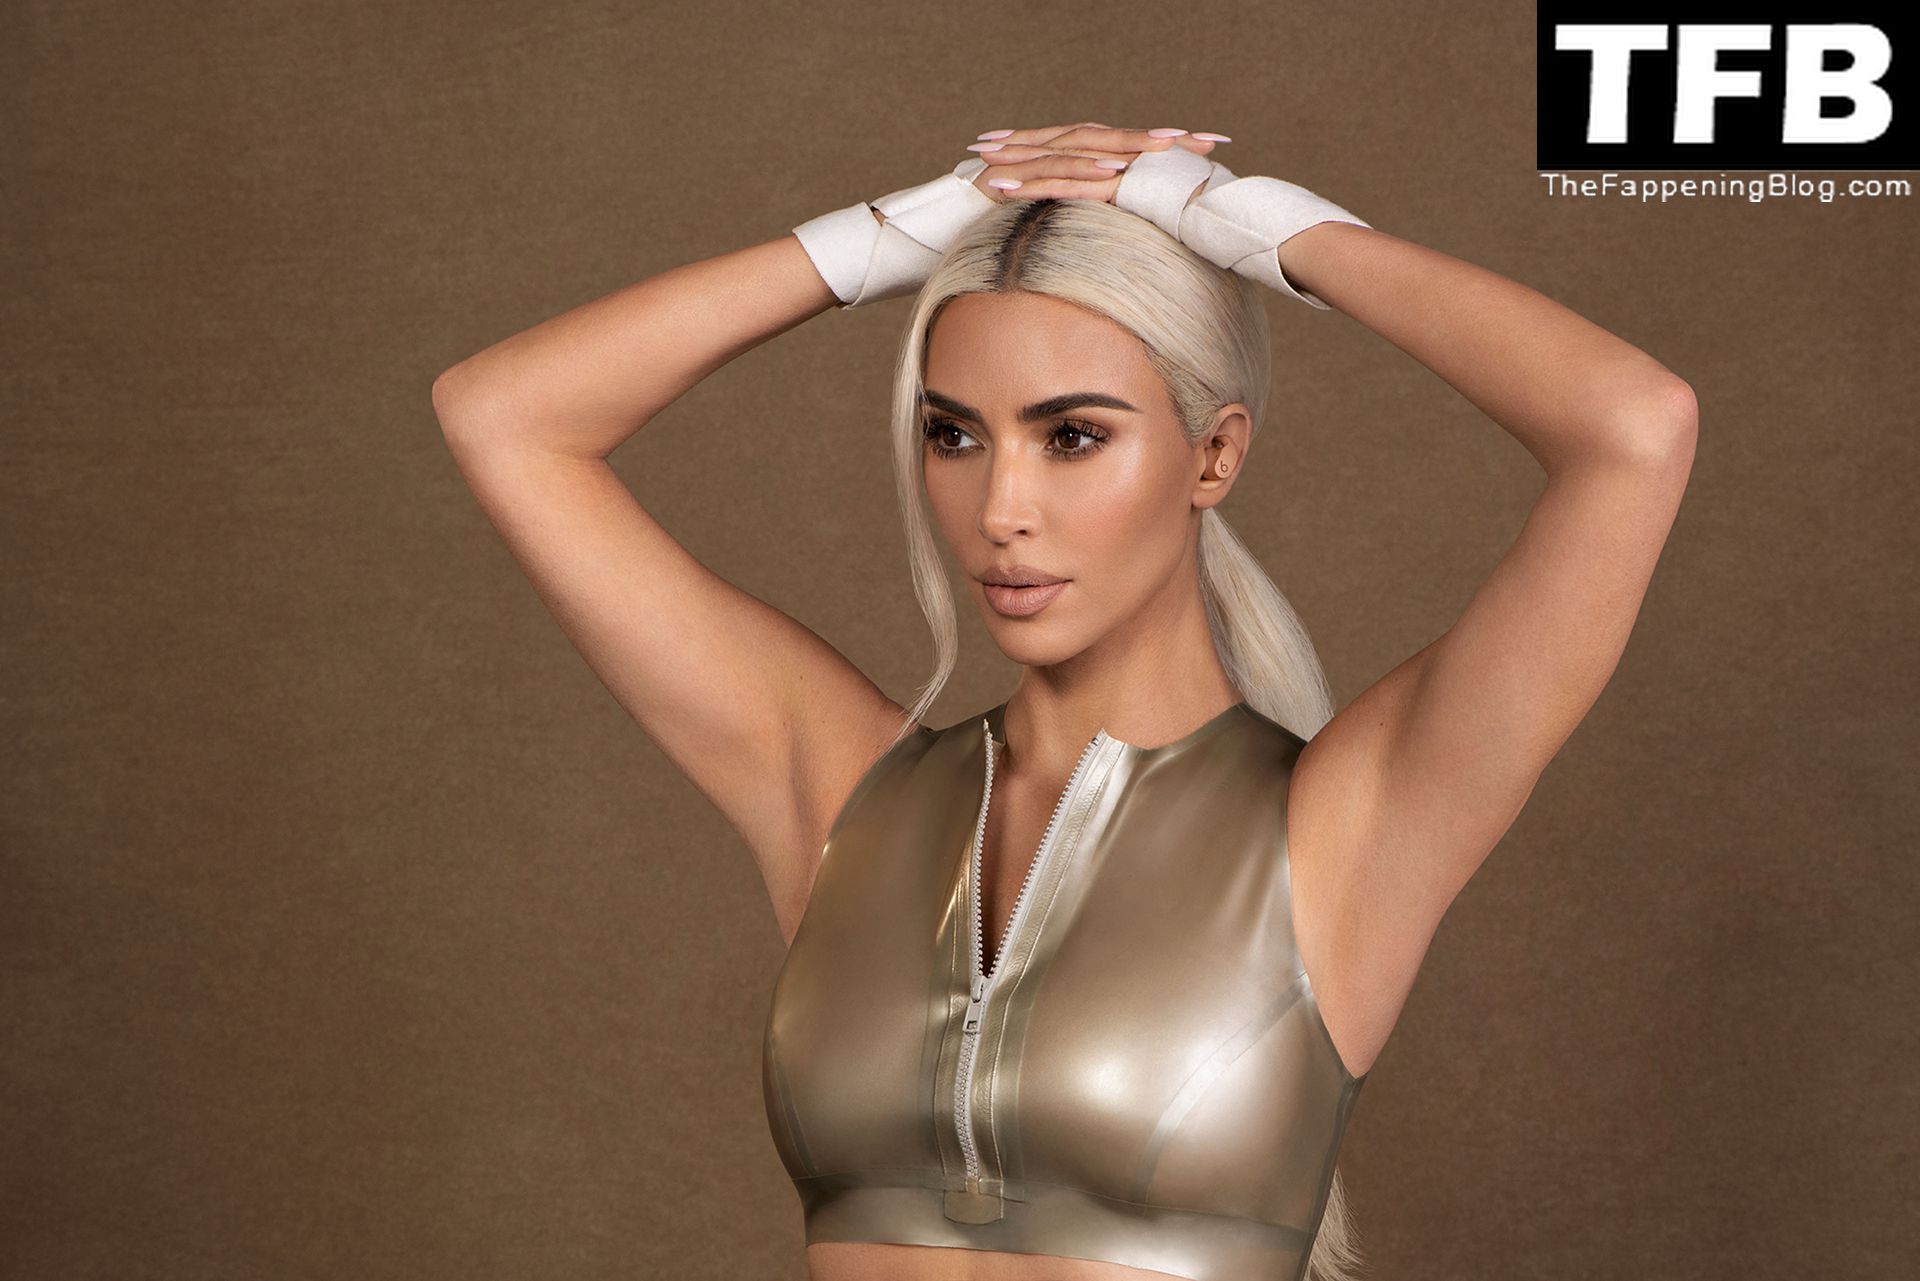 Kim-Kardashian-Sexy-The-Fappening-Blog-2.jpg